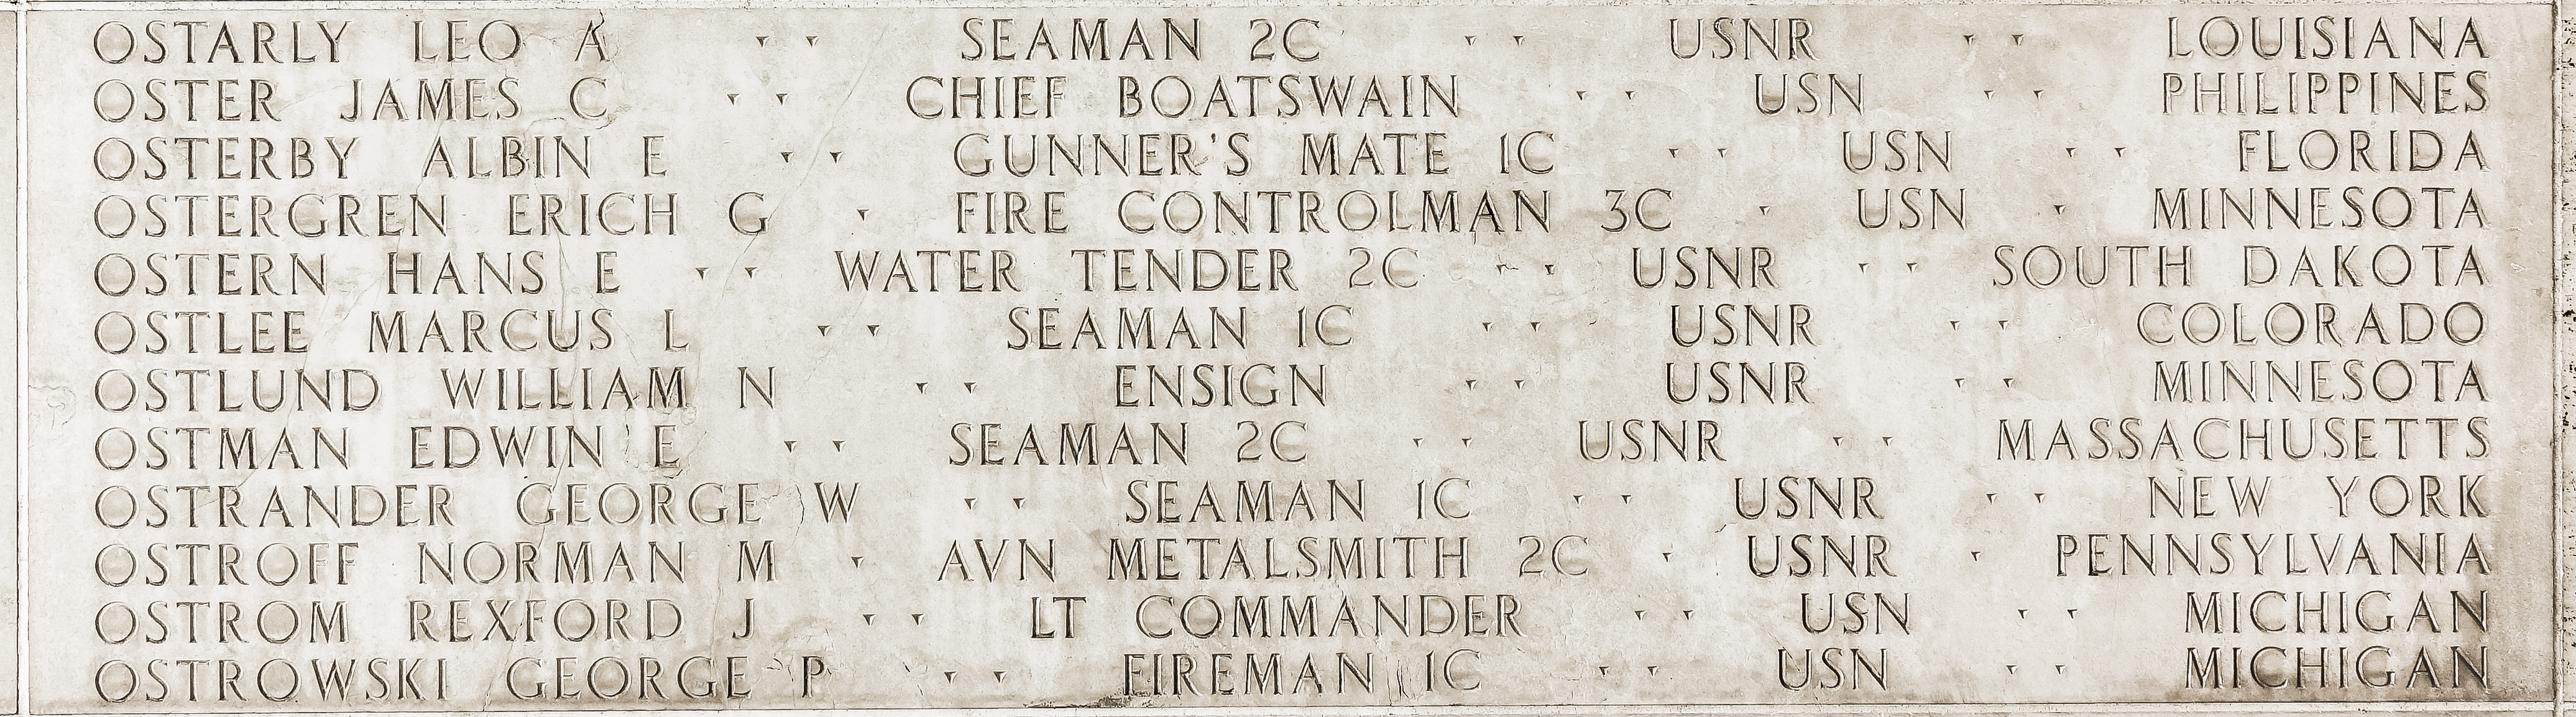 Edwin E. Ostman, Seaman Second Class